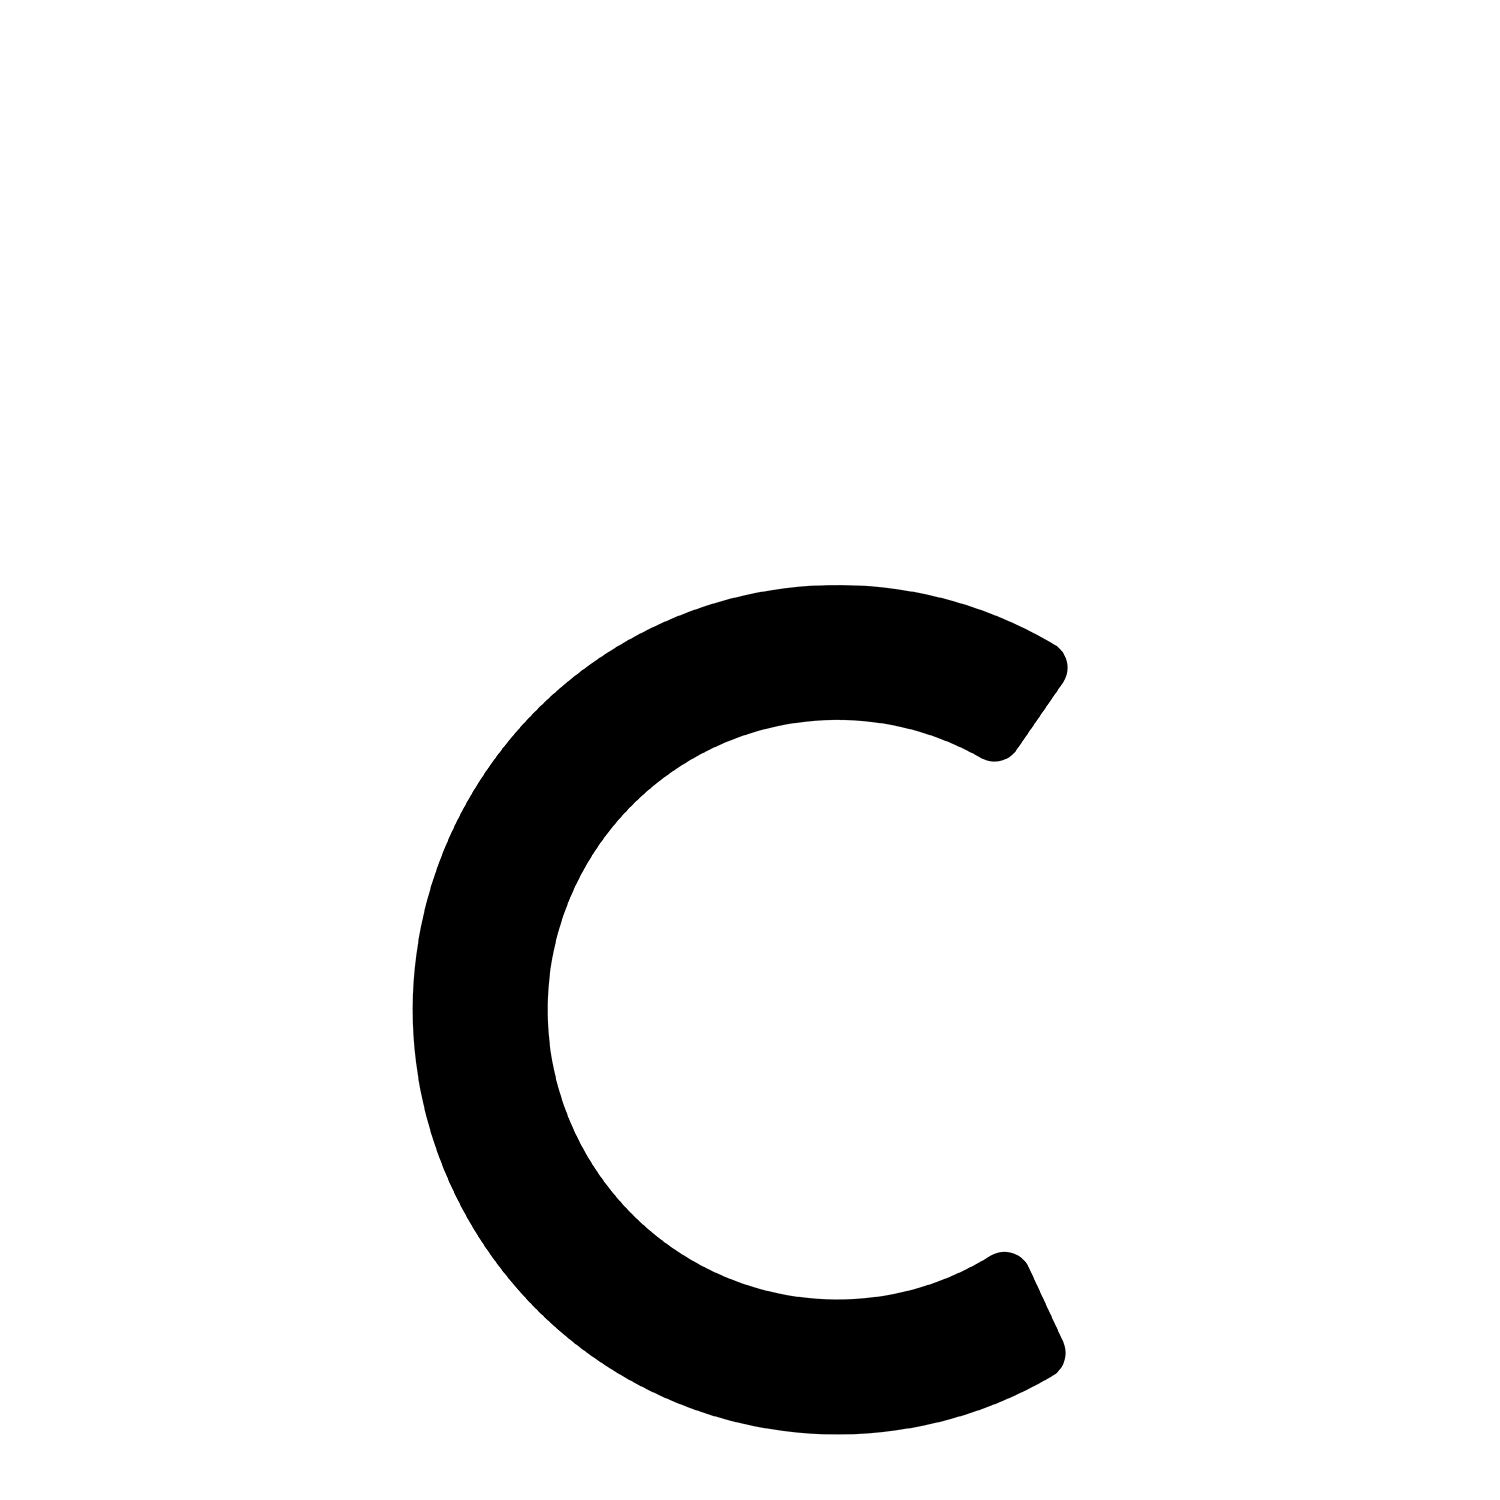 Samoprzylepny numer domu „C” - 245 mm w kolorze czarnym